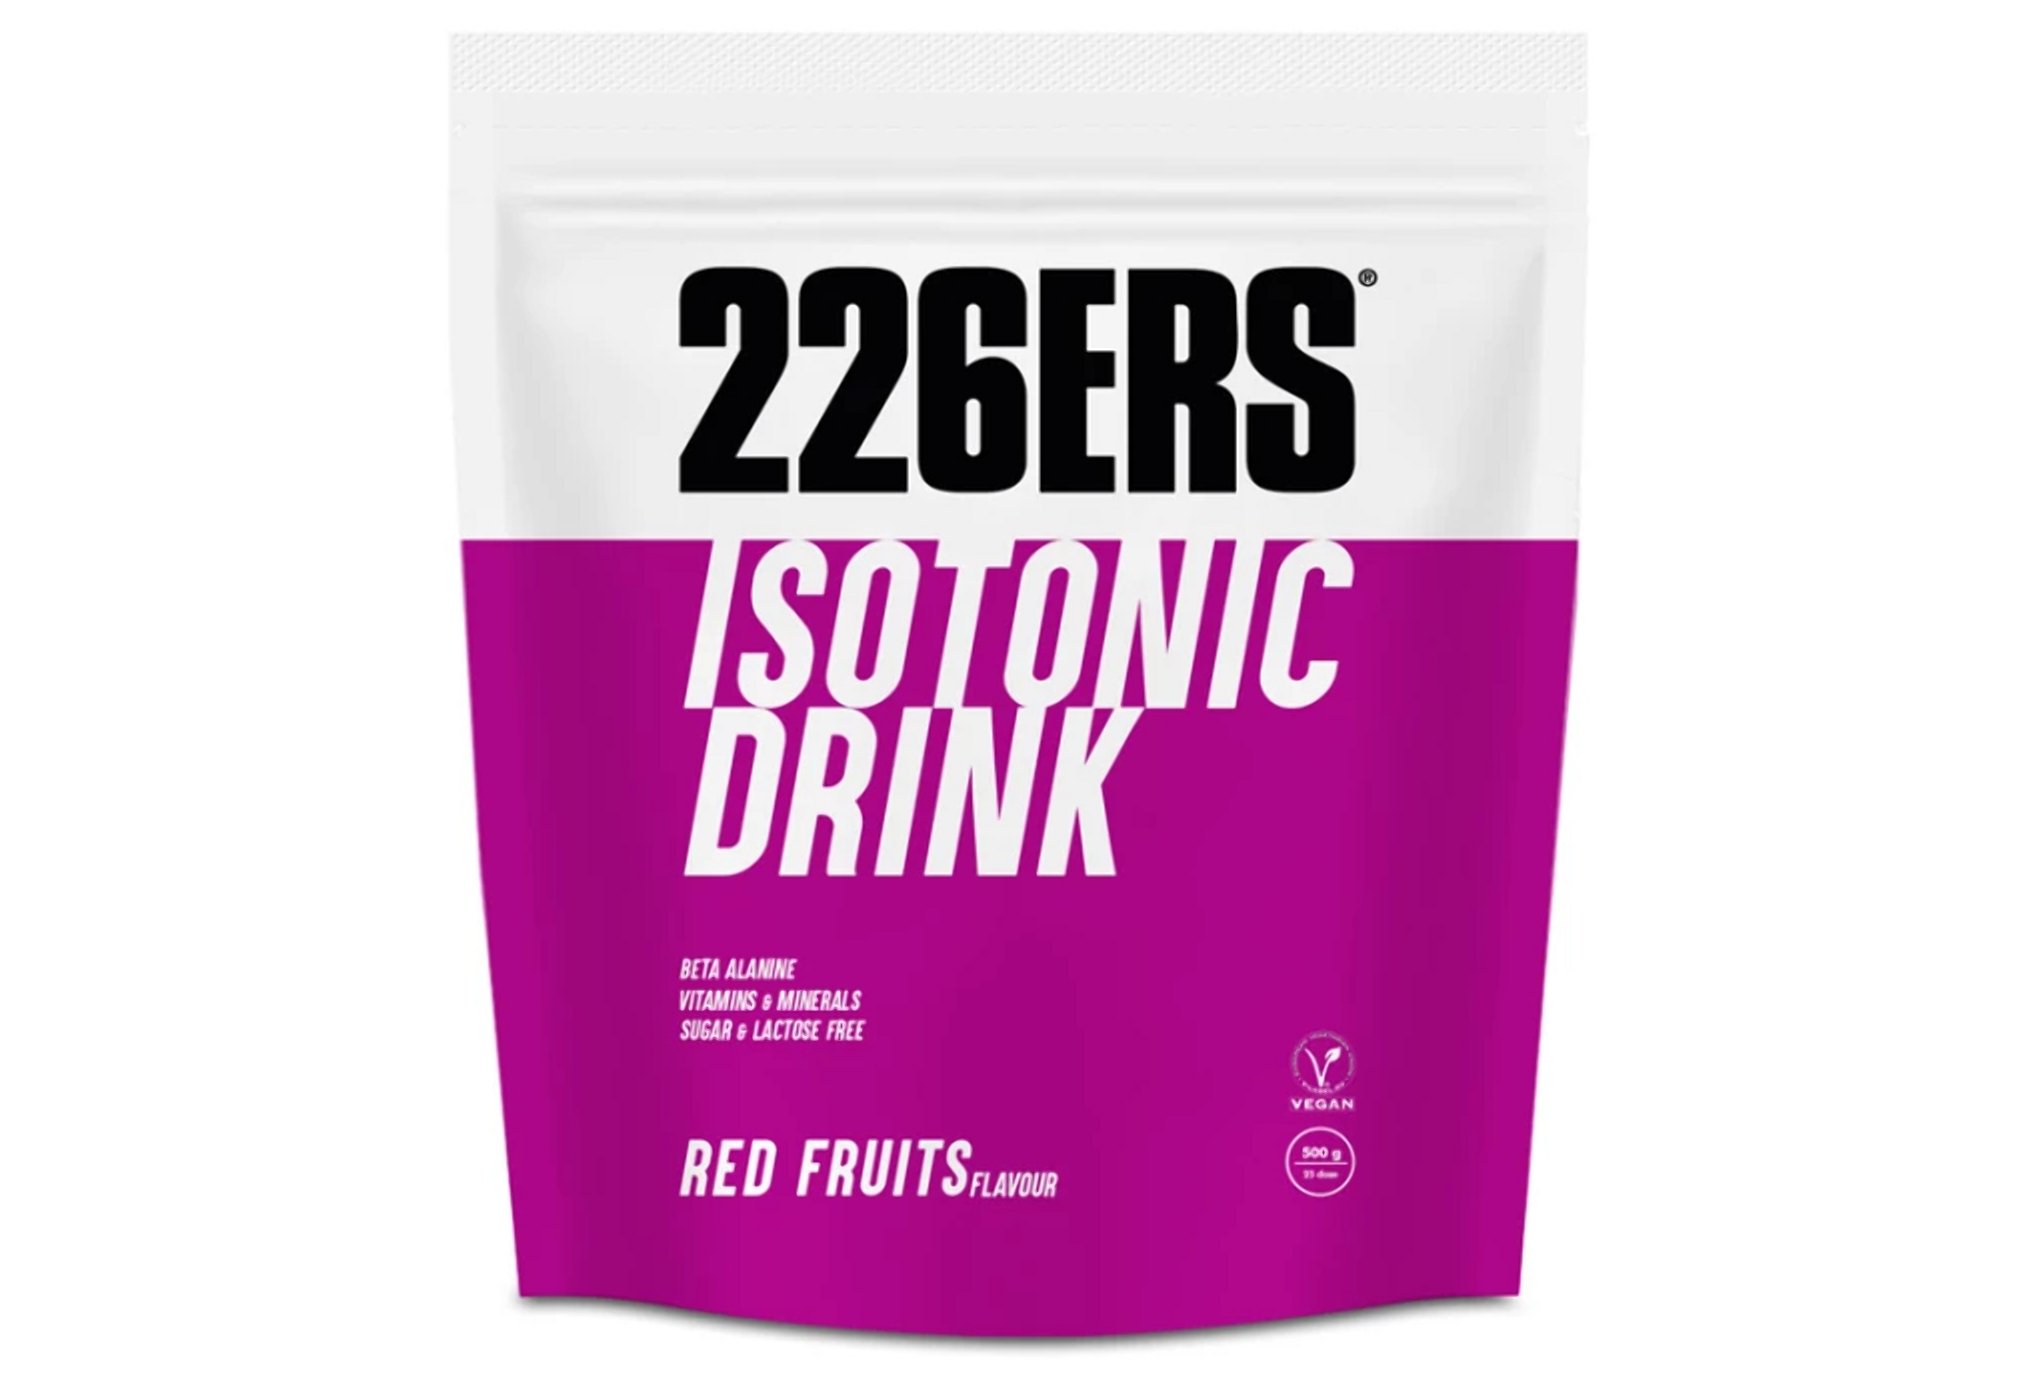 226ers Isotonic Drink - Fruits rouges - 0.5 kg Diététique Boissons